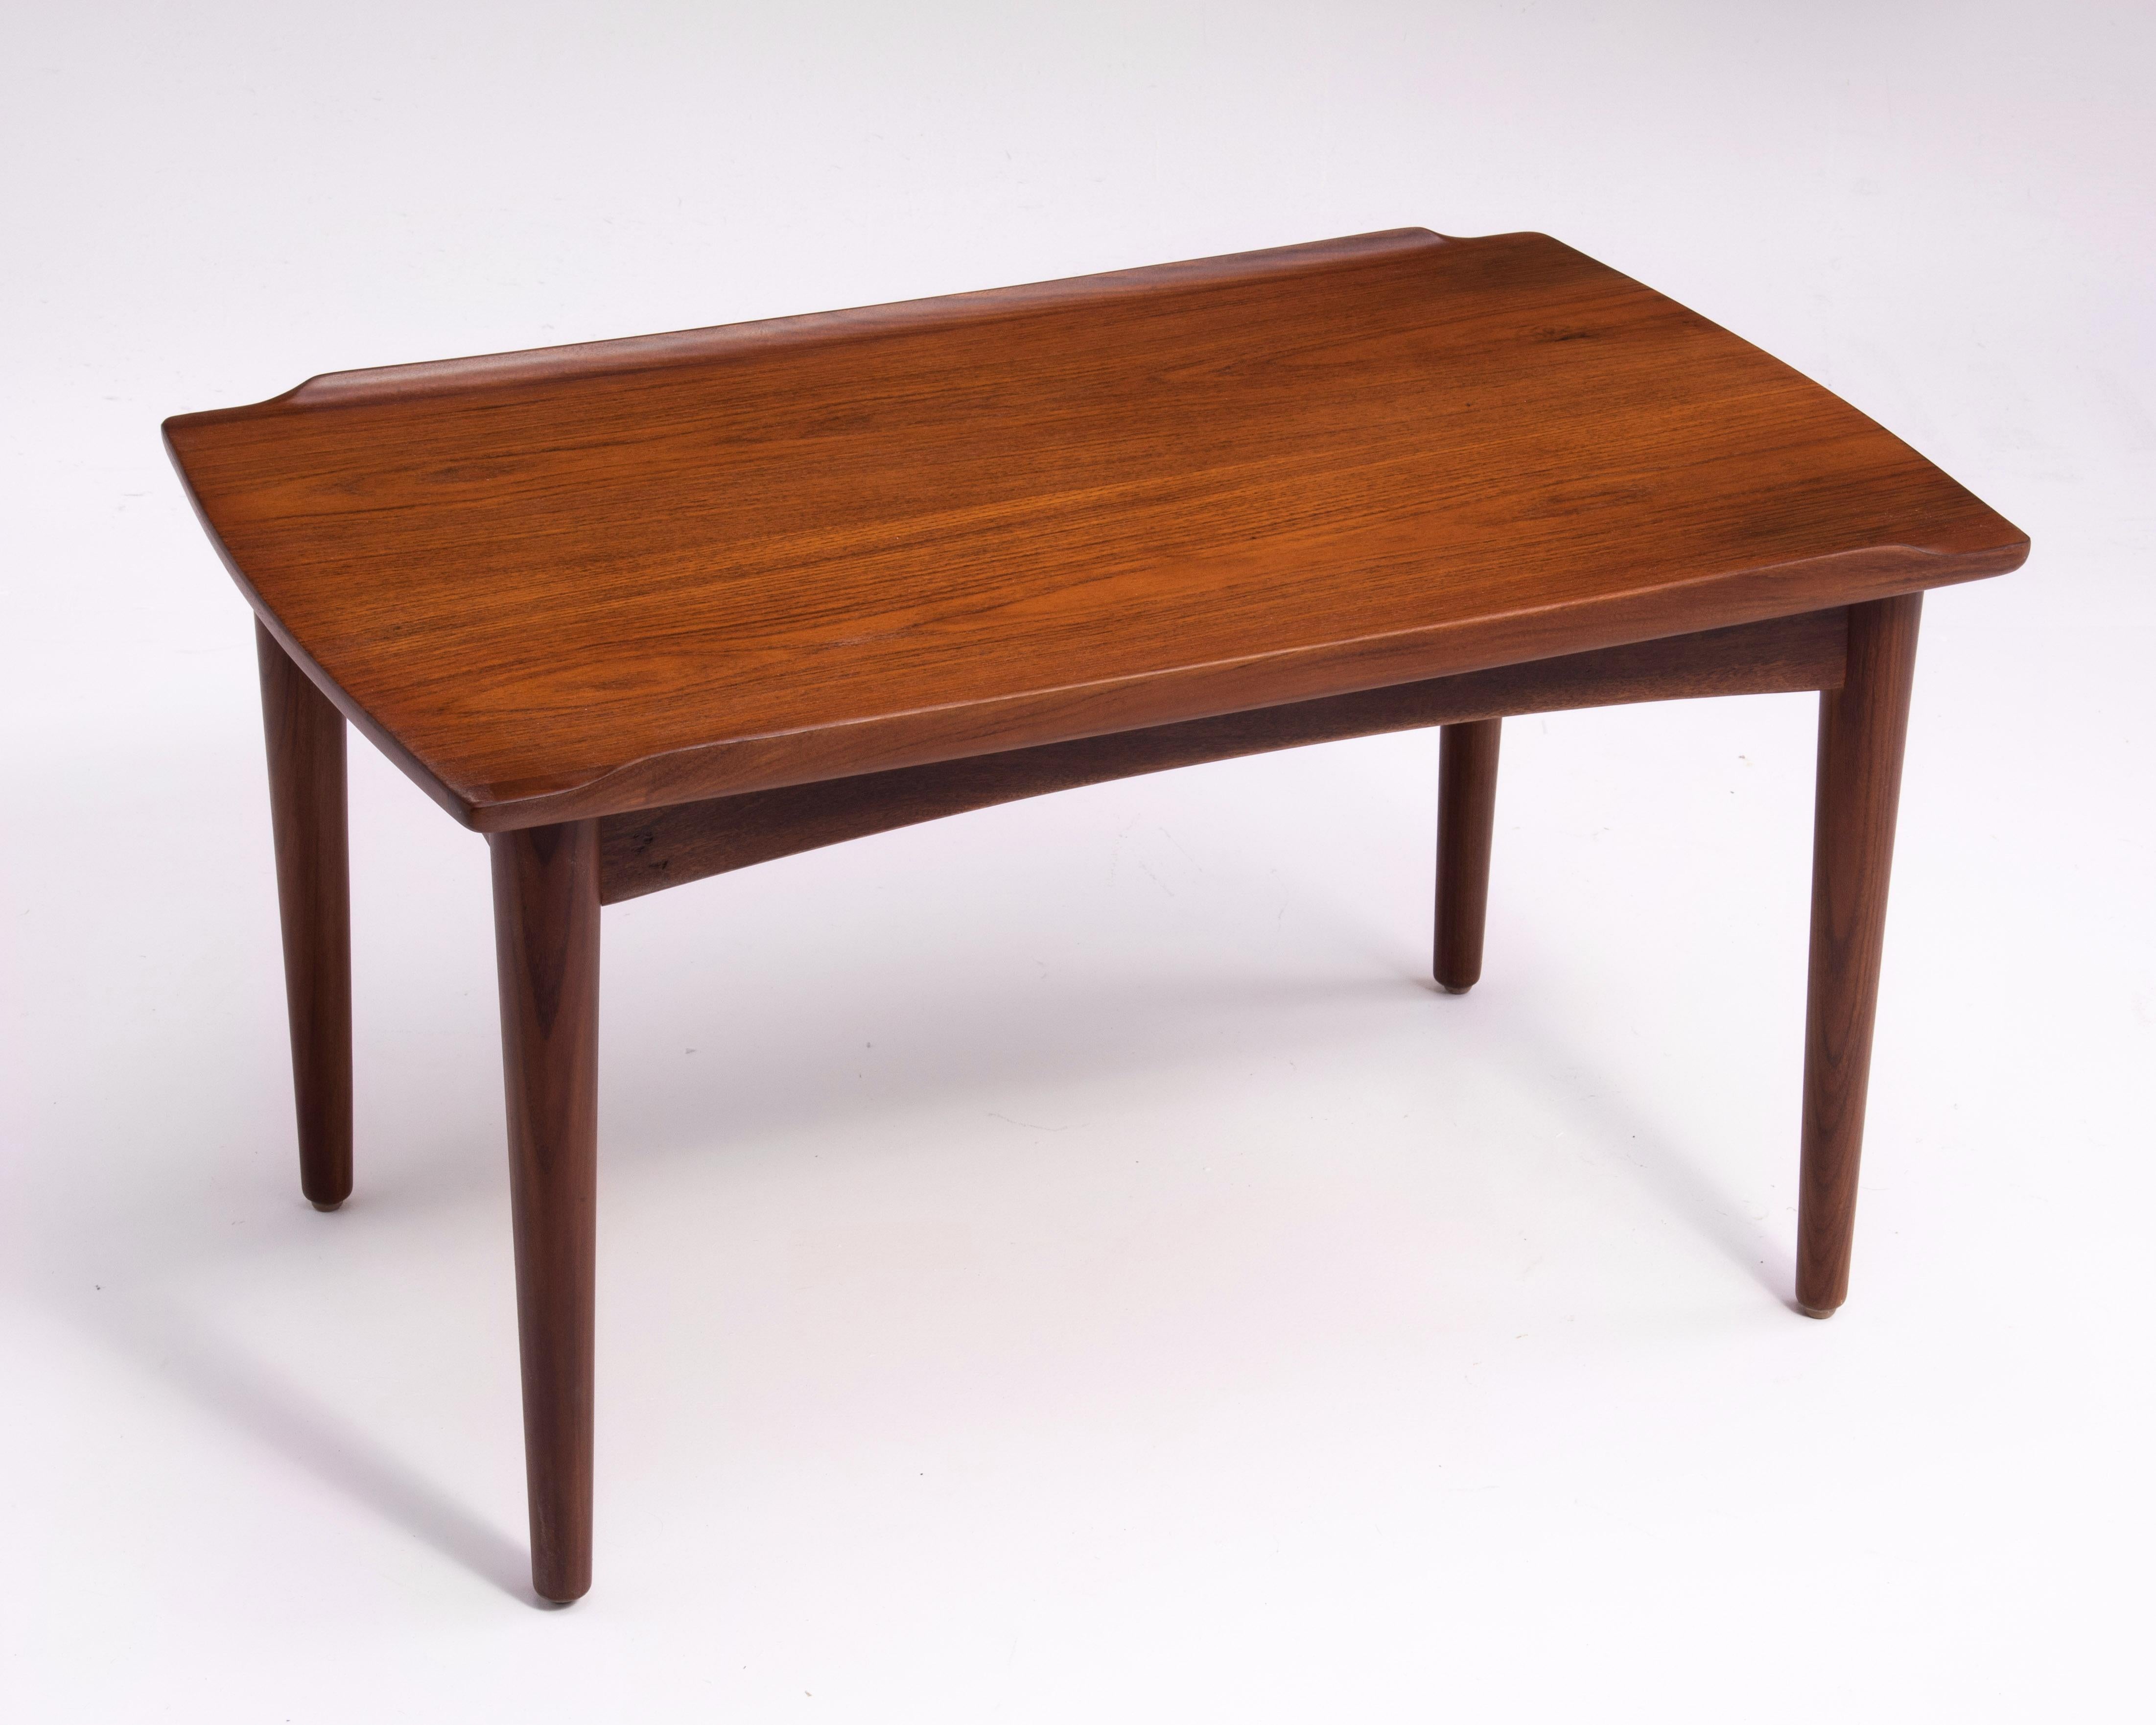 Danish Modern Teak Dowel Leg Side Table After Grete Jalk Marked B. J. 1970s For Sale 4